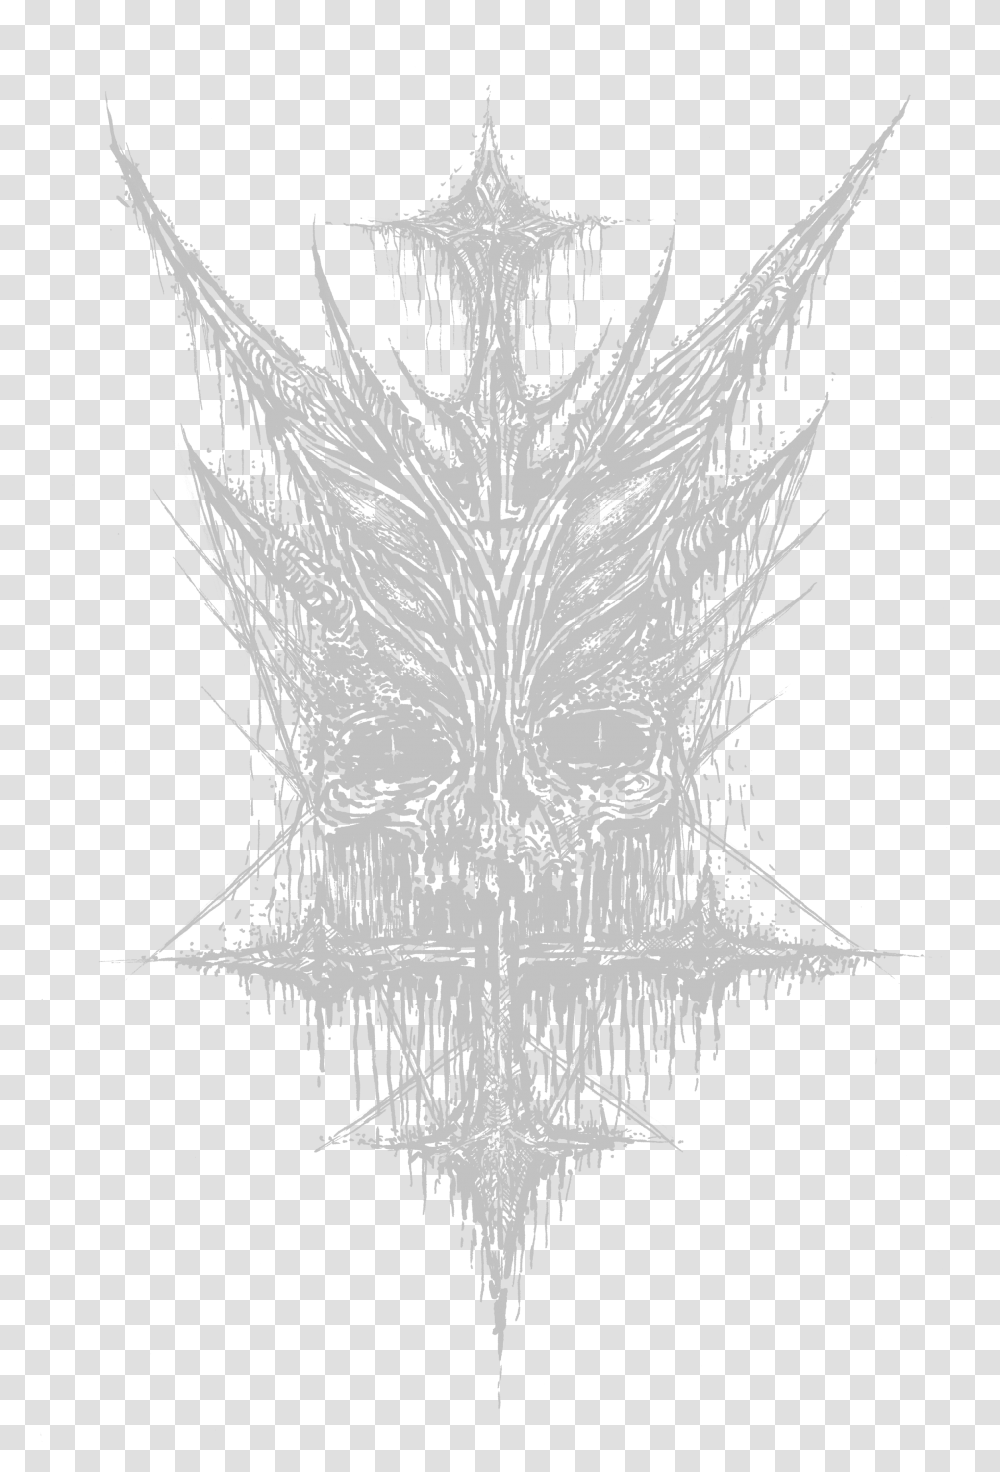 Ascended Dead Sigil Sketch, Spider Web, Emblem, Stencil Transparent Png